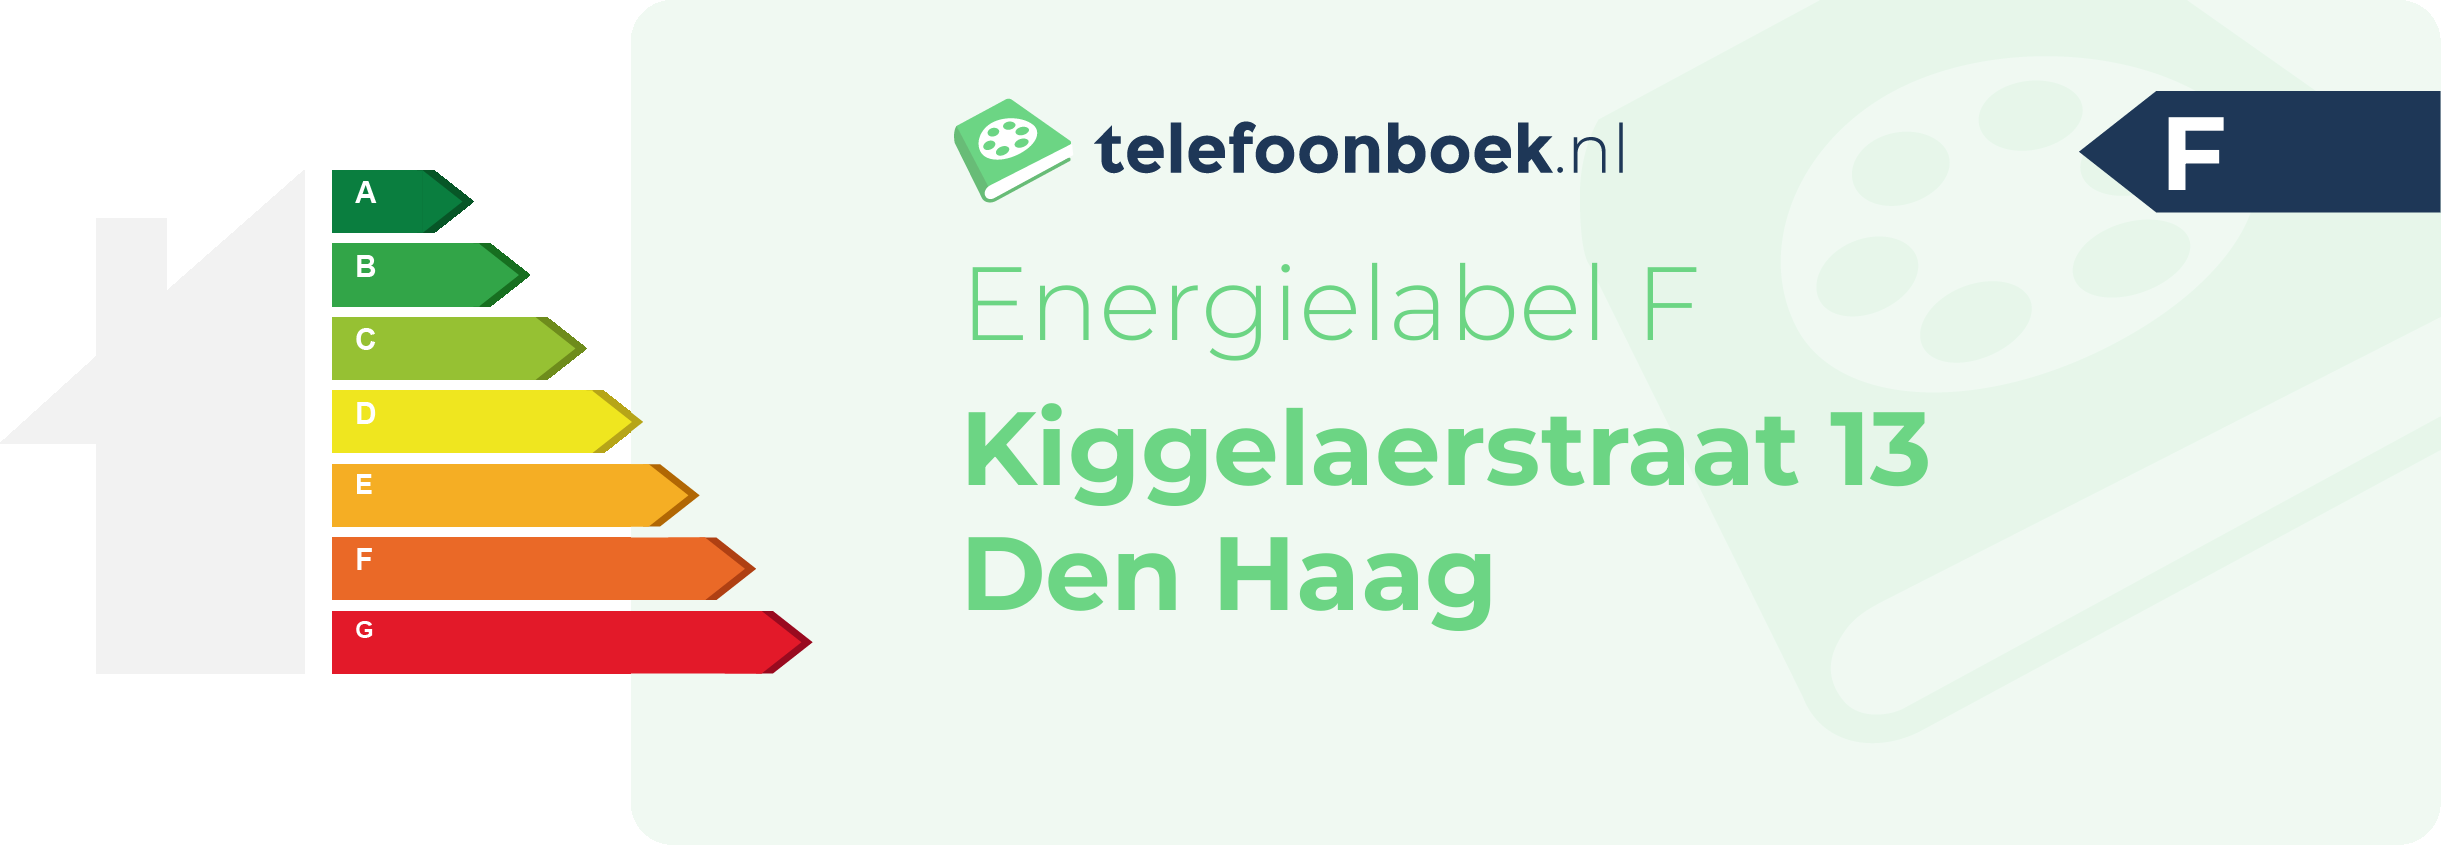 Energielabel Kiggelaerstraat 13 Den Haag